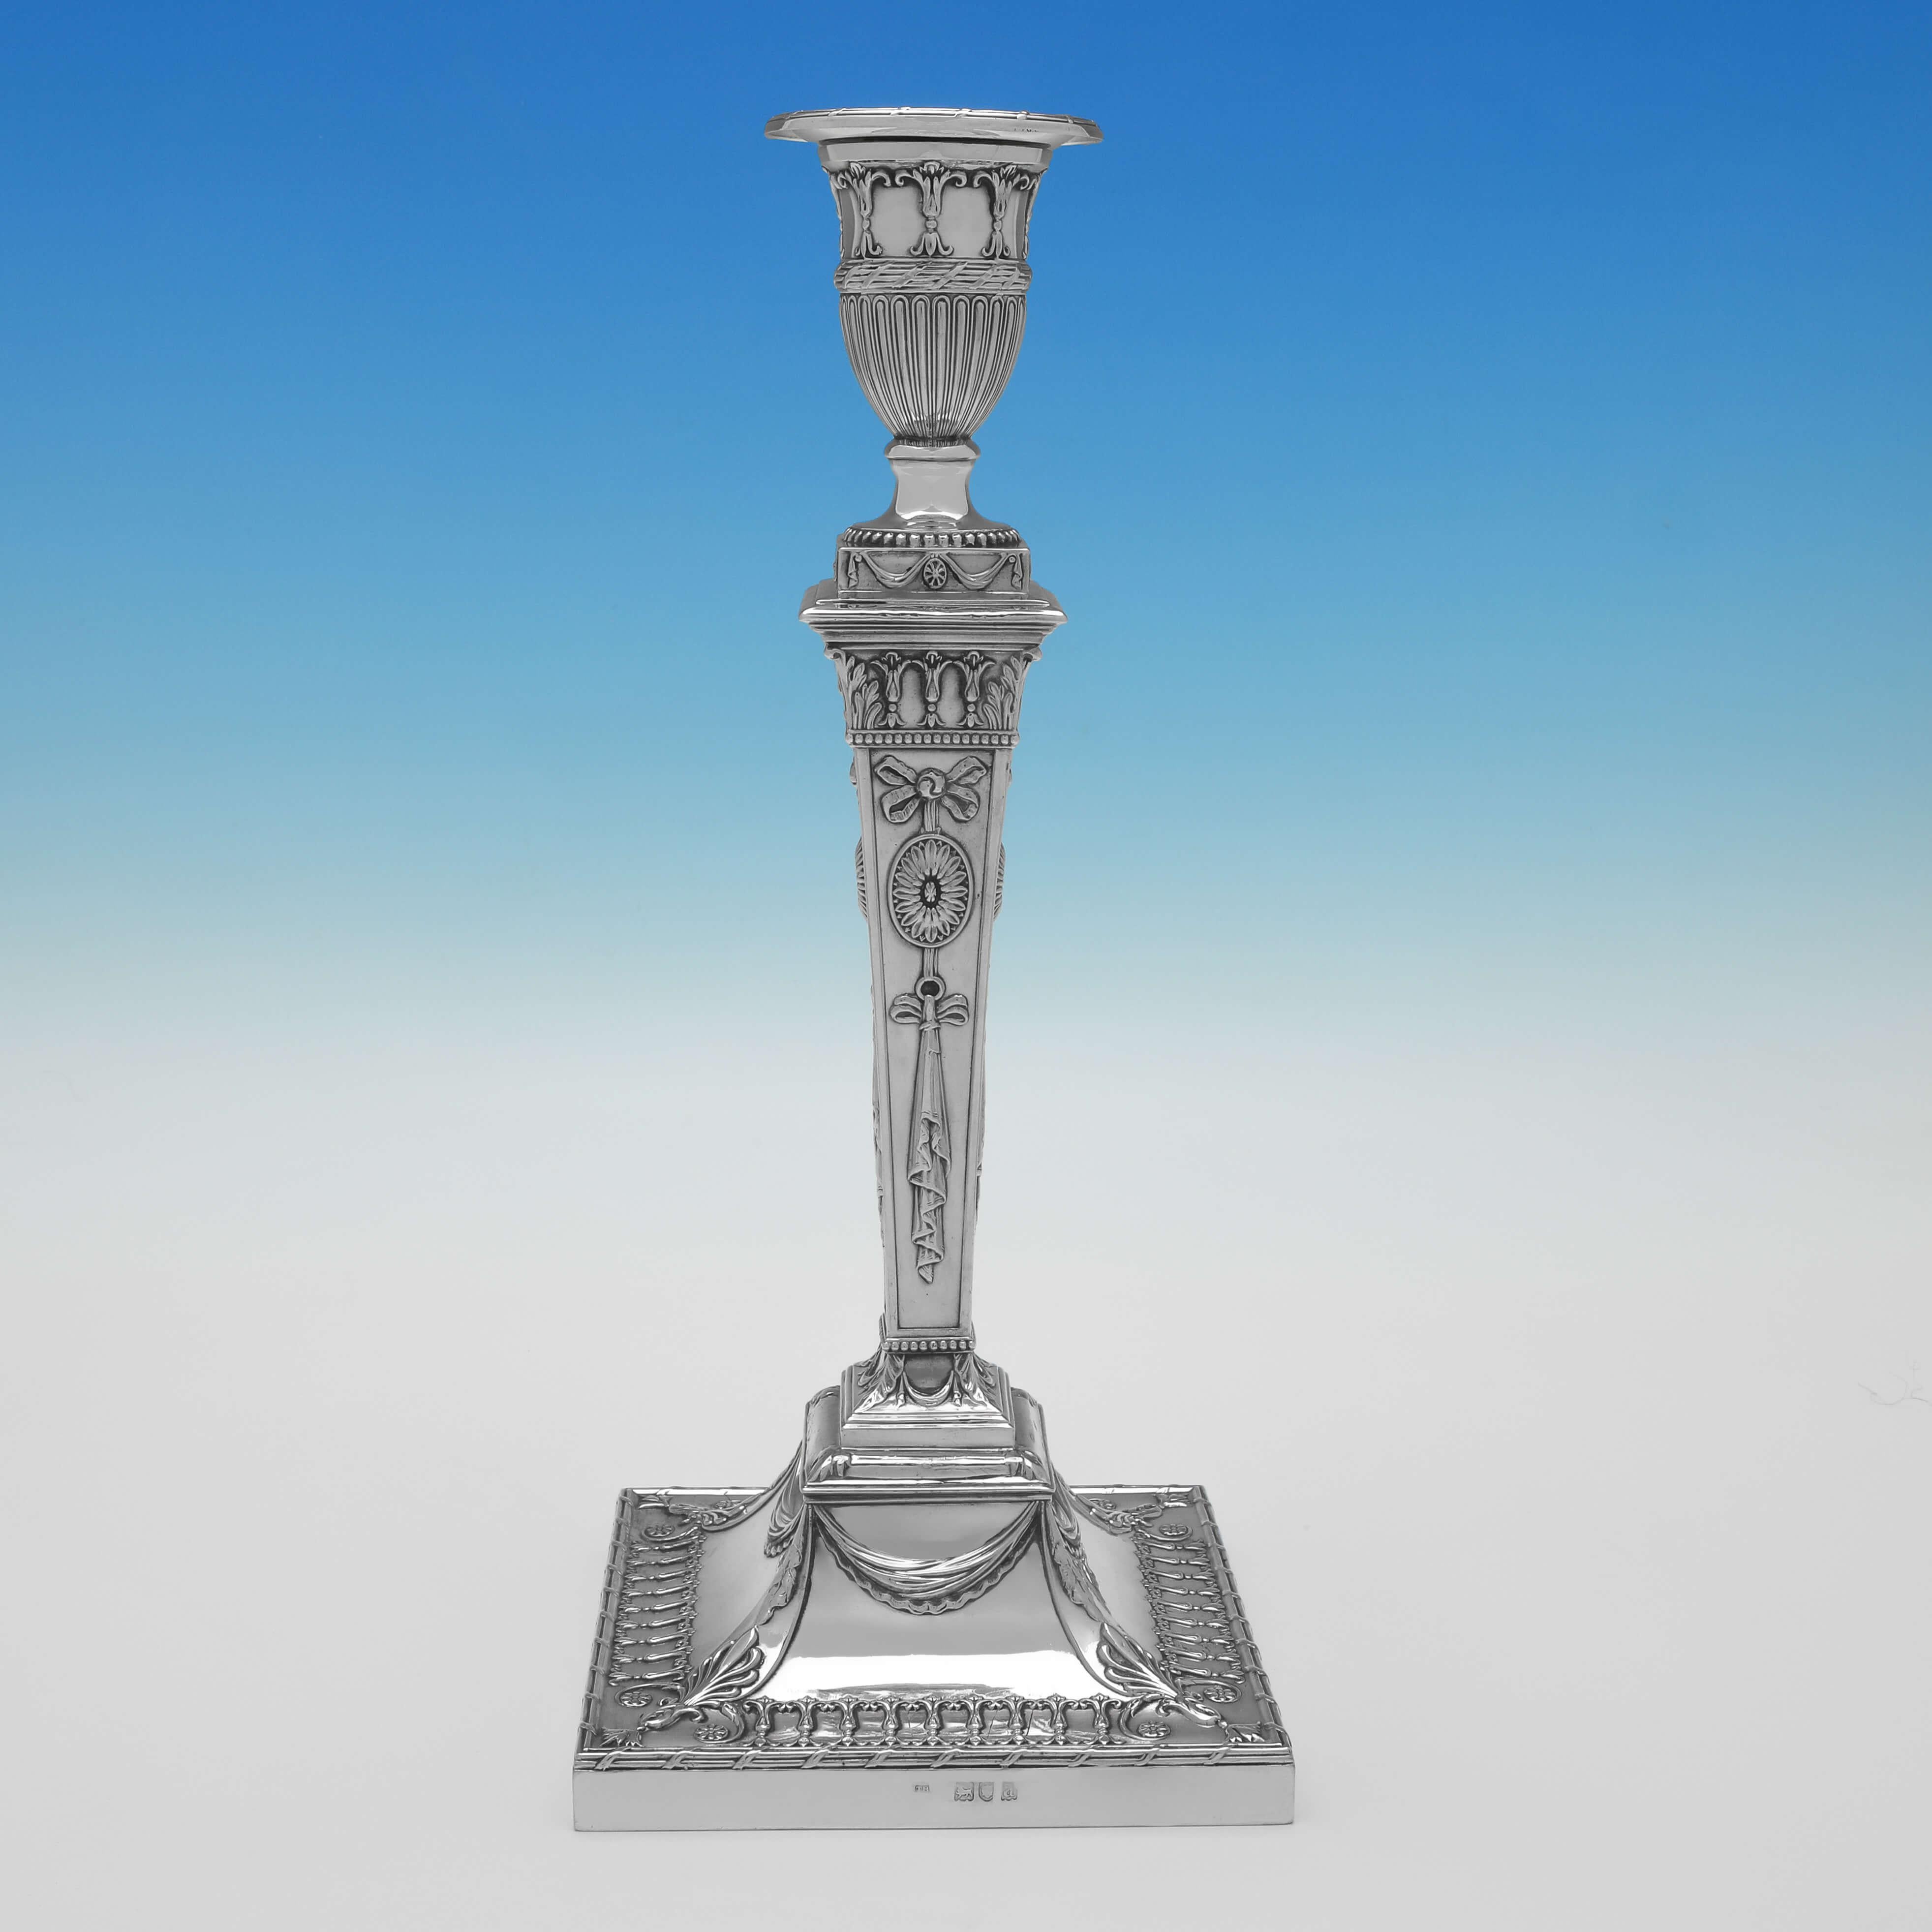 Signé à Londres en 1896 par Thomas Bradbury & Sons, cet ensemble victorien de 4 chandeliers en argent sterling ancien est de style néoclassique. 

Chaque chandelier mesure 30 cm de haut, 13 cm de large et 13 cm de profondeur, et il est rempli pour